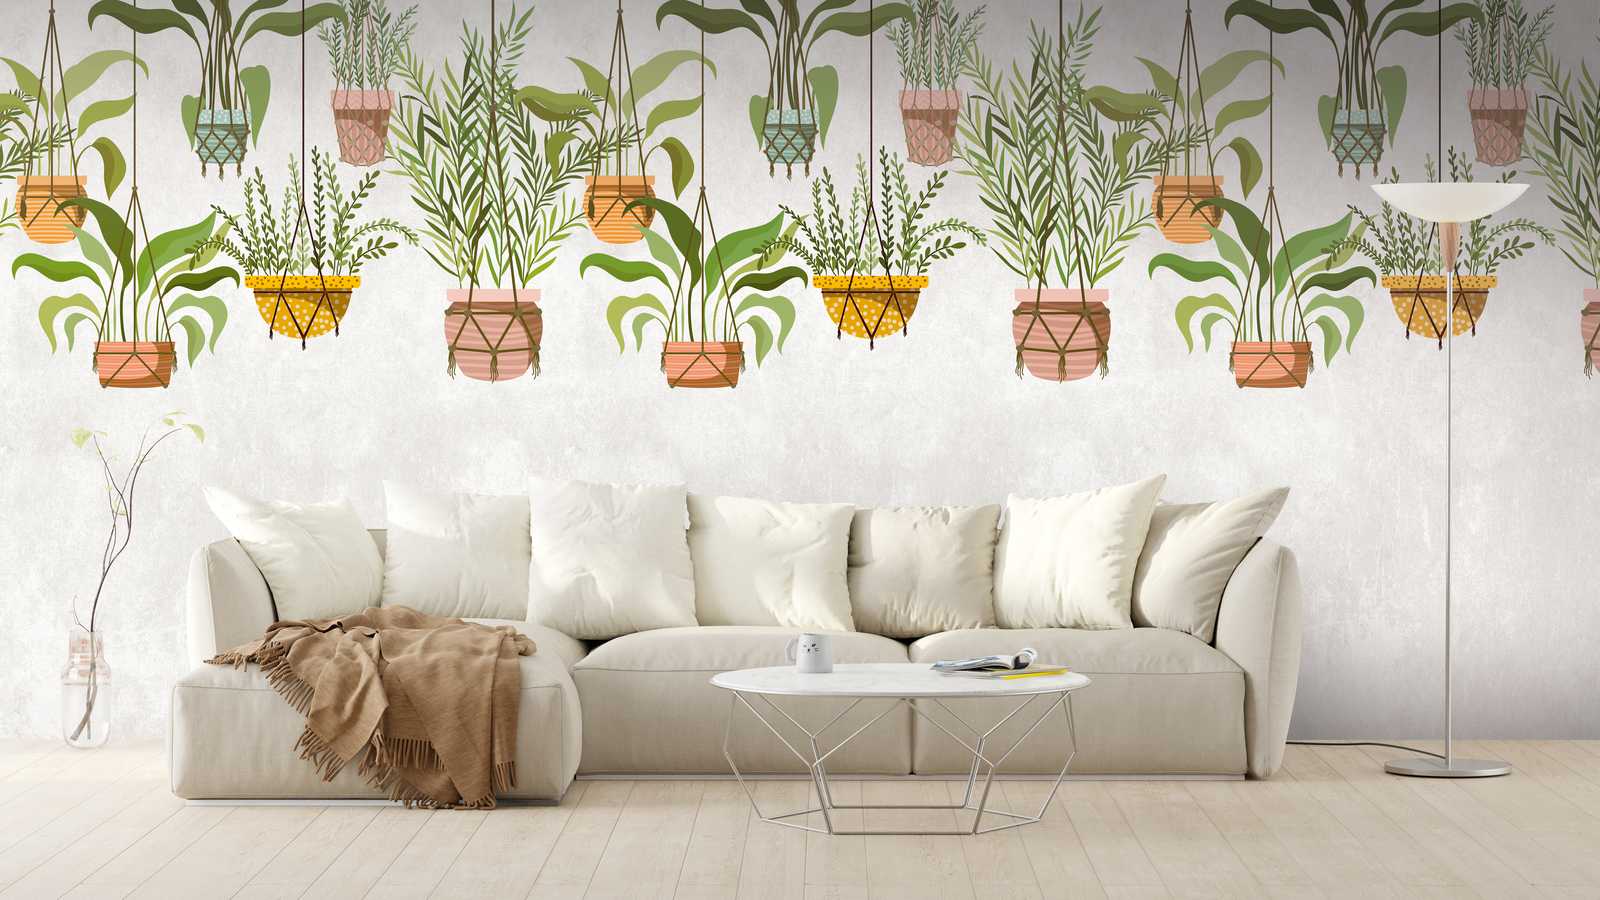             behangpapier nieuwigheid | motief behang opknoping planten botanische decor
        